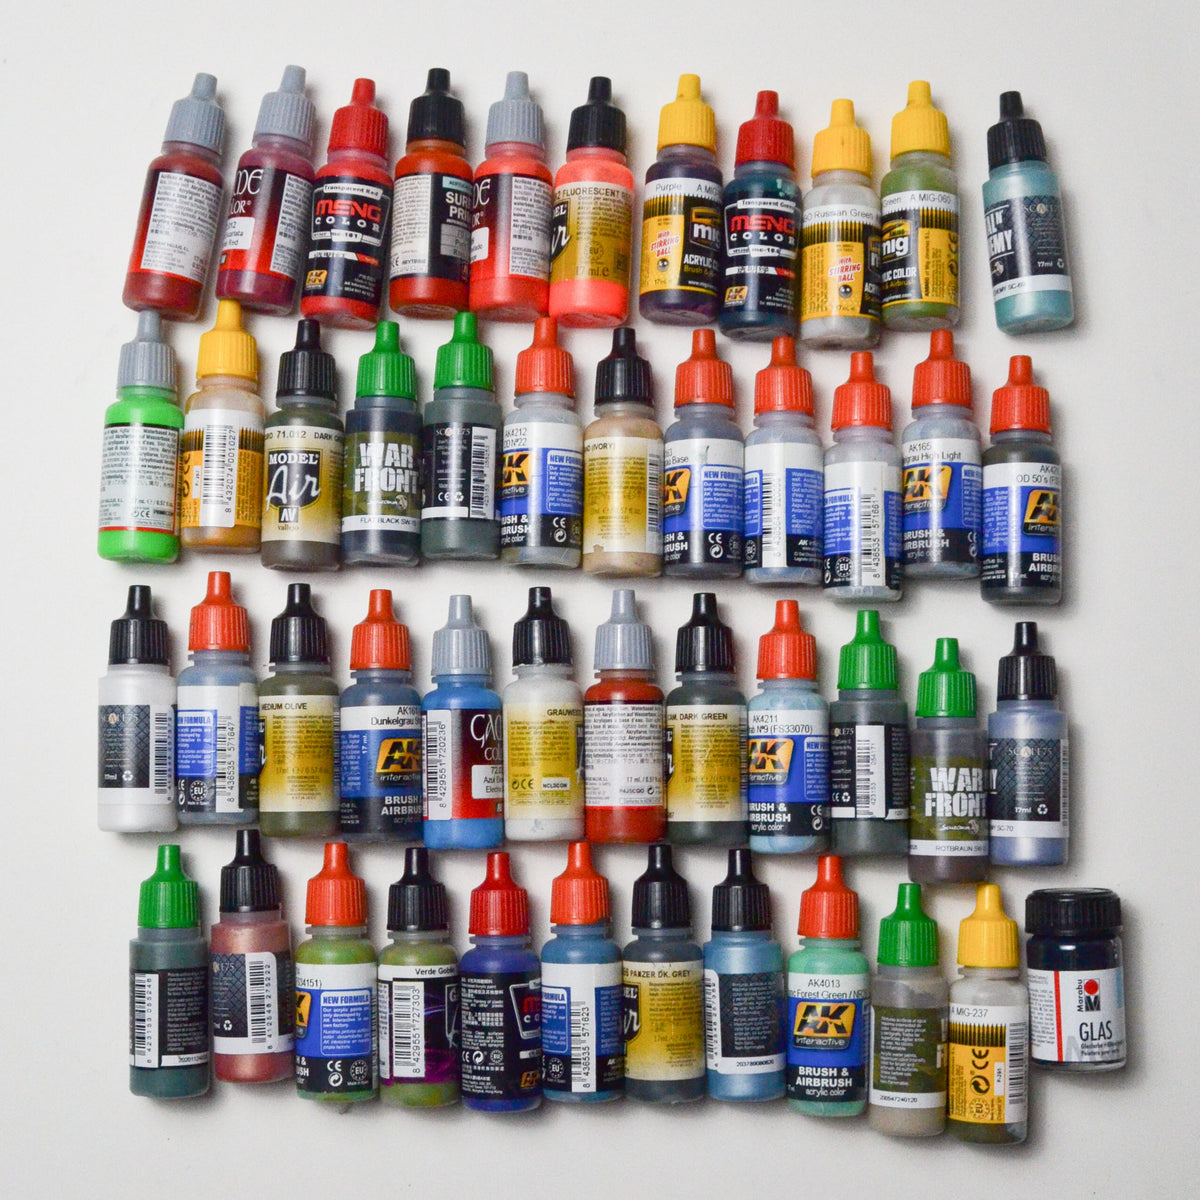 Airbrush + Model Paint - 47 Bottles